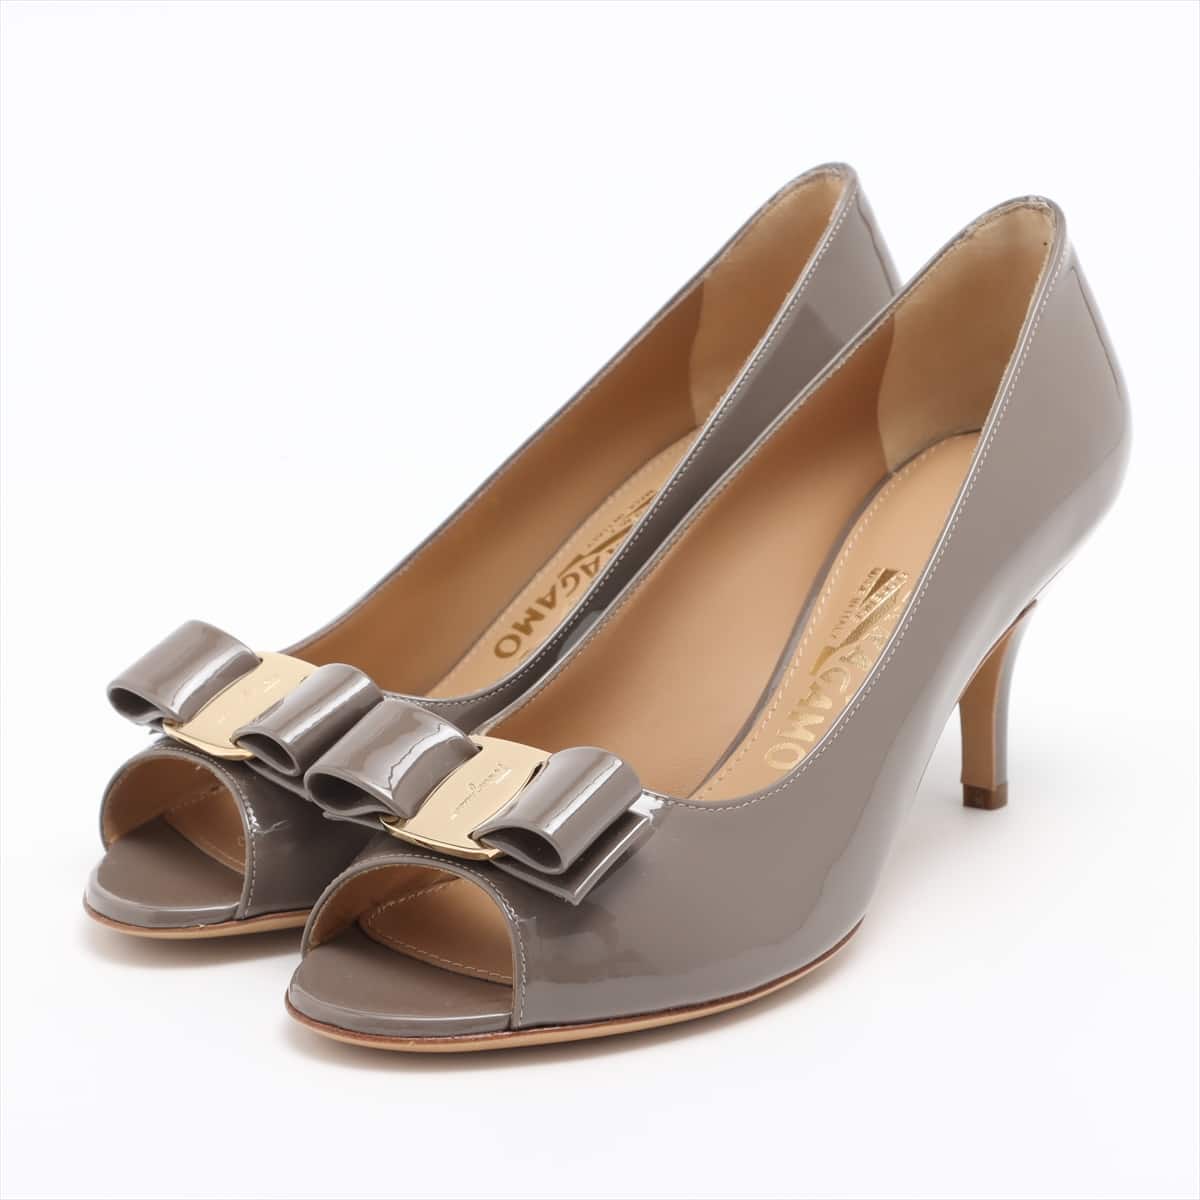 Ferragamo Vara Patent leather Open-toe Pumps 6 Ladies' Grey